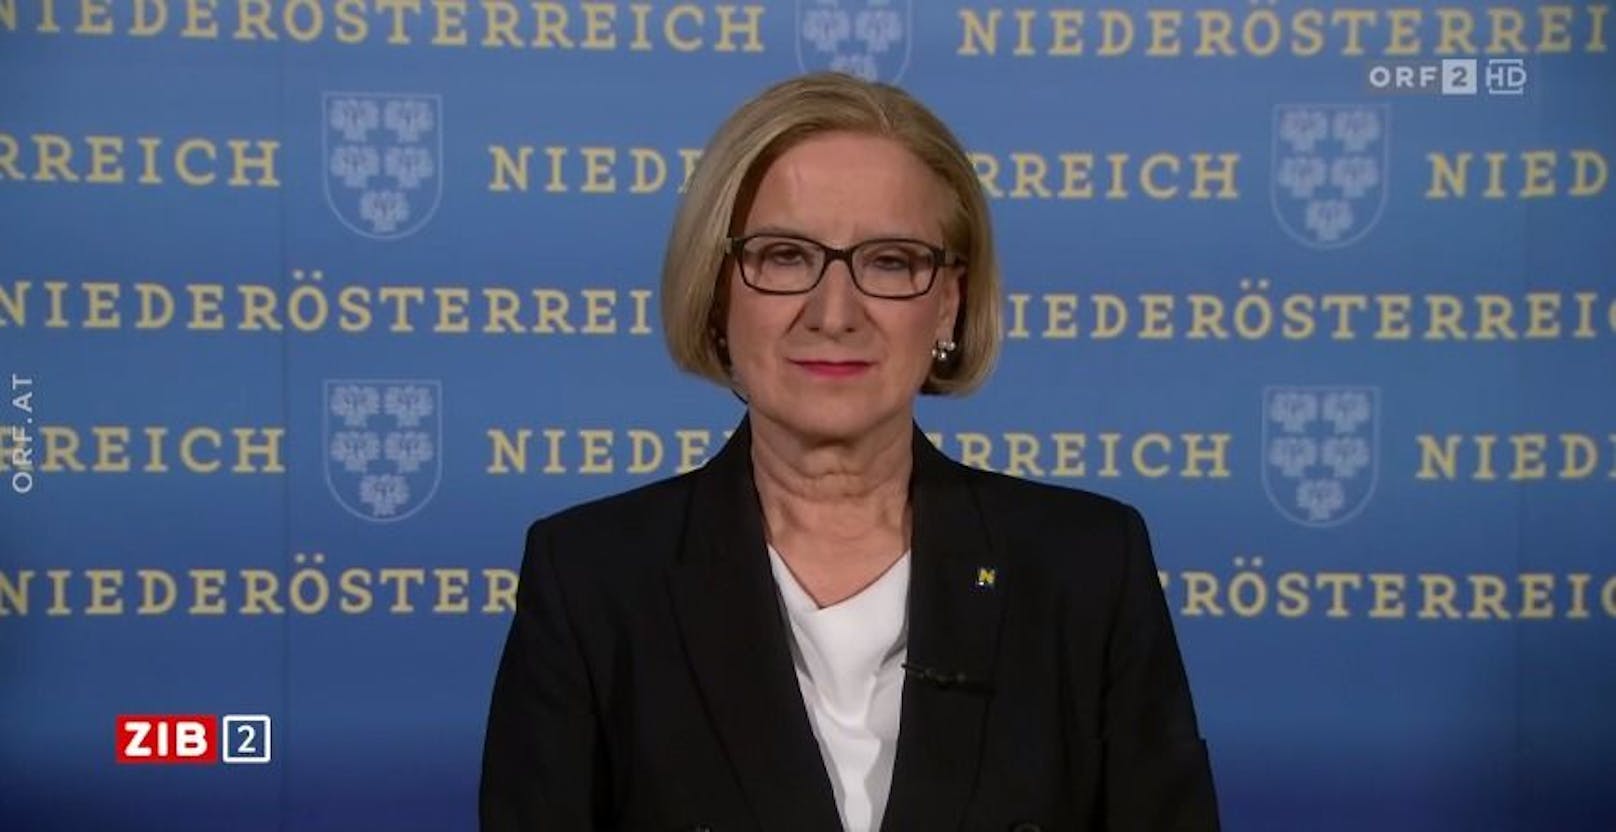 Niederösterreichs Landeshauptfrau Johanna Mikl-Leitner nahm in der ORF-"ZIB2" zur Mini-Zustimmung Stellung.